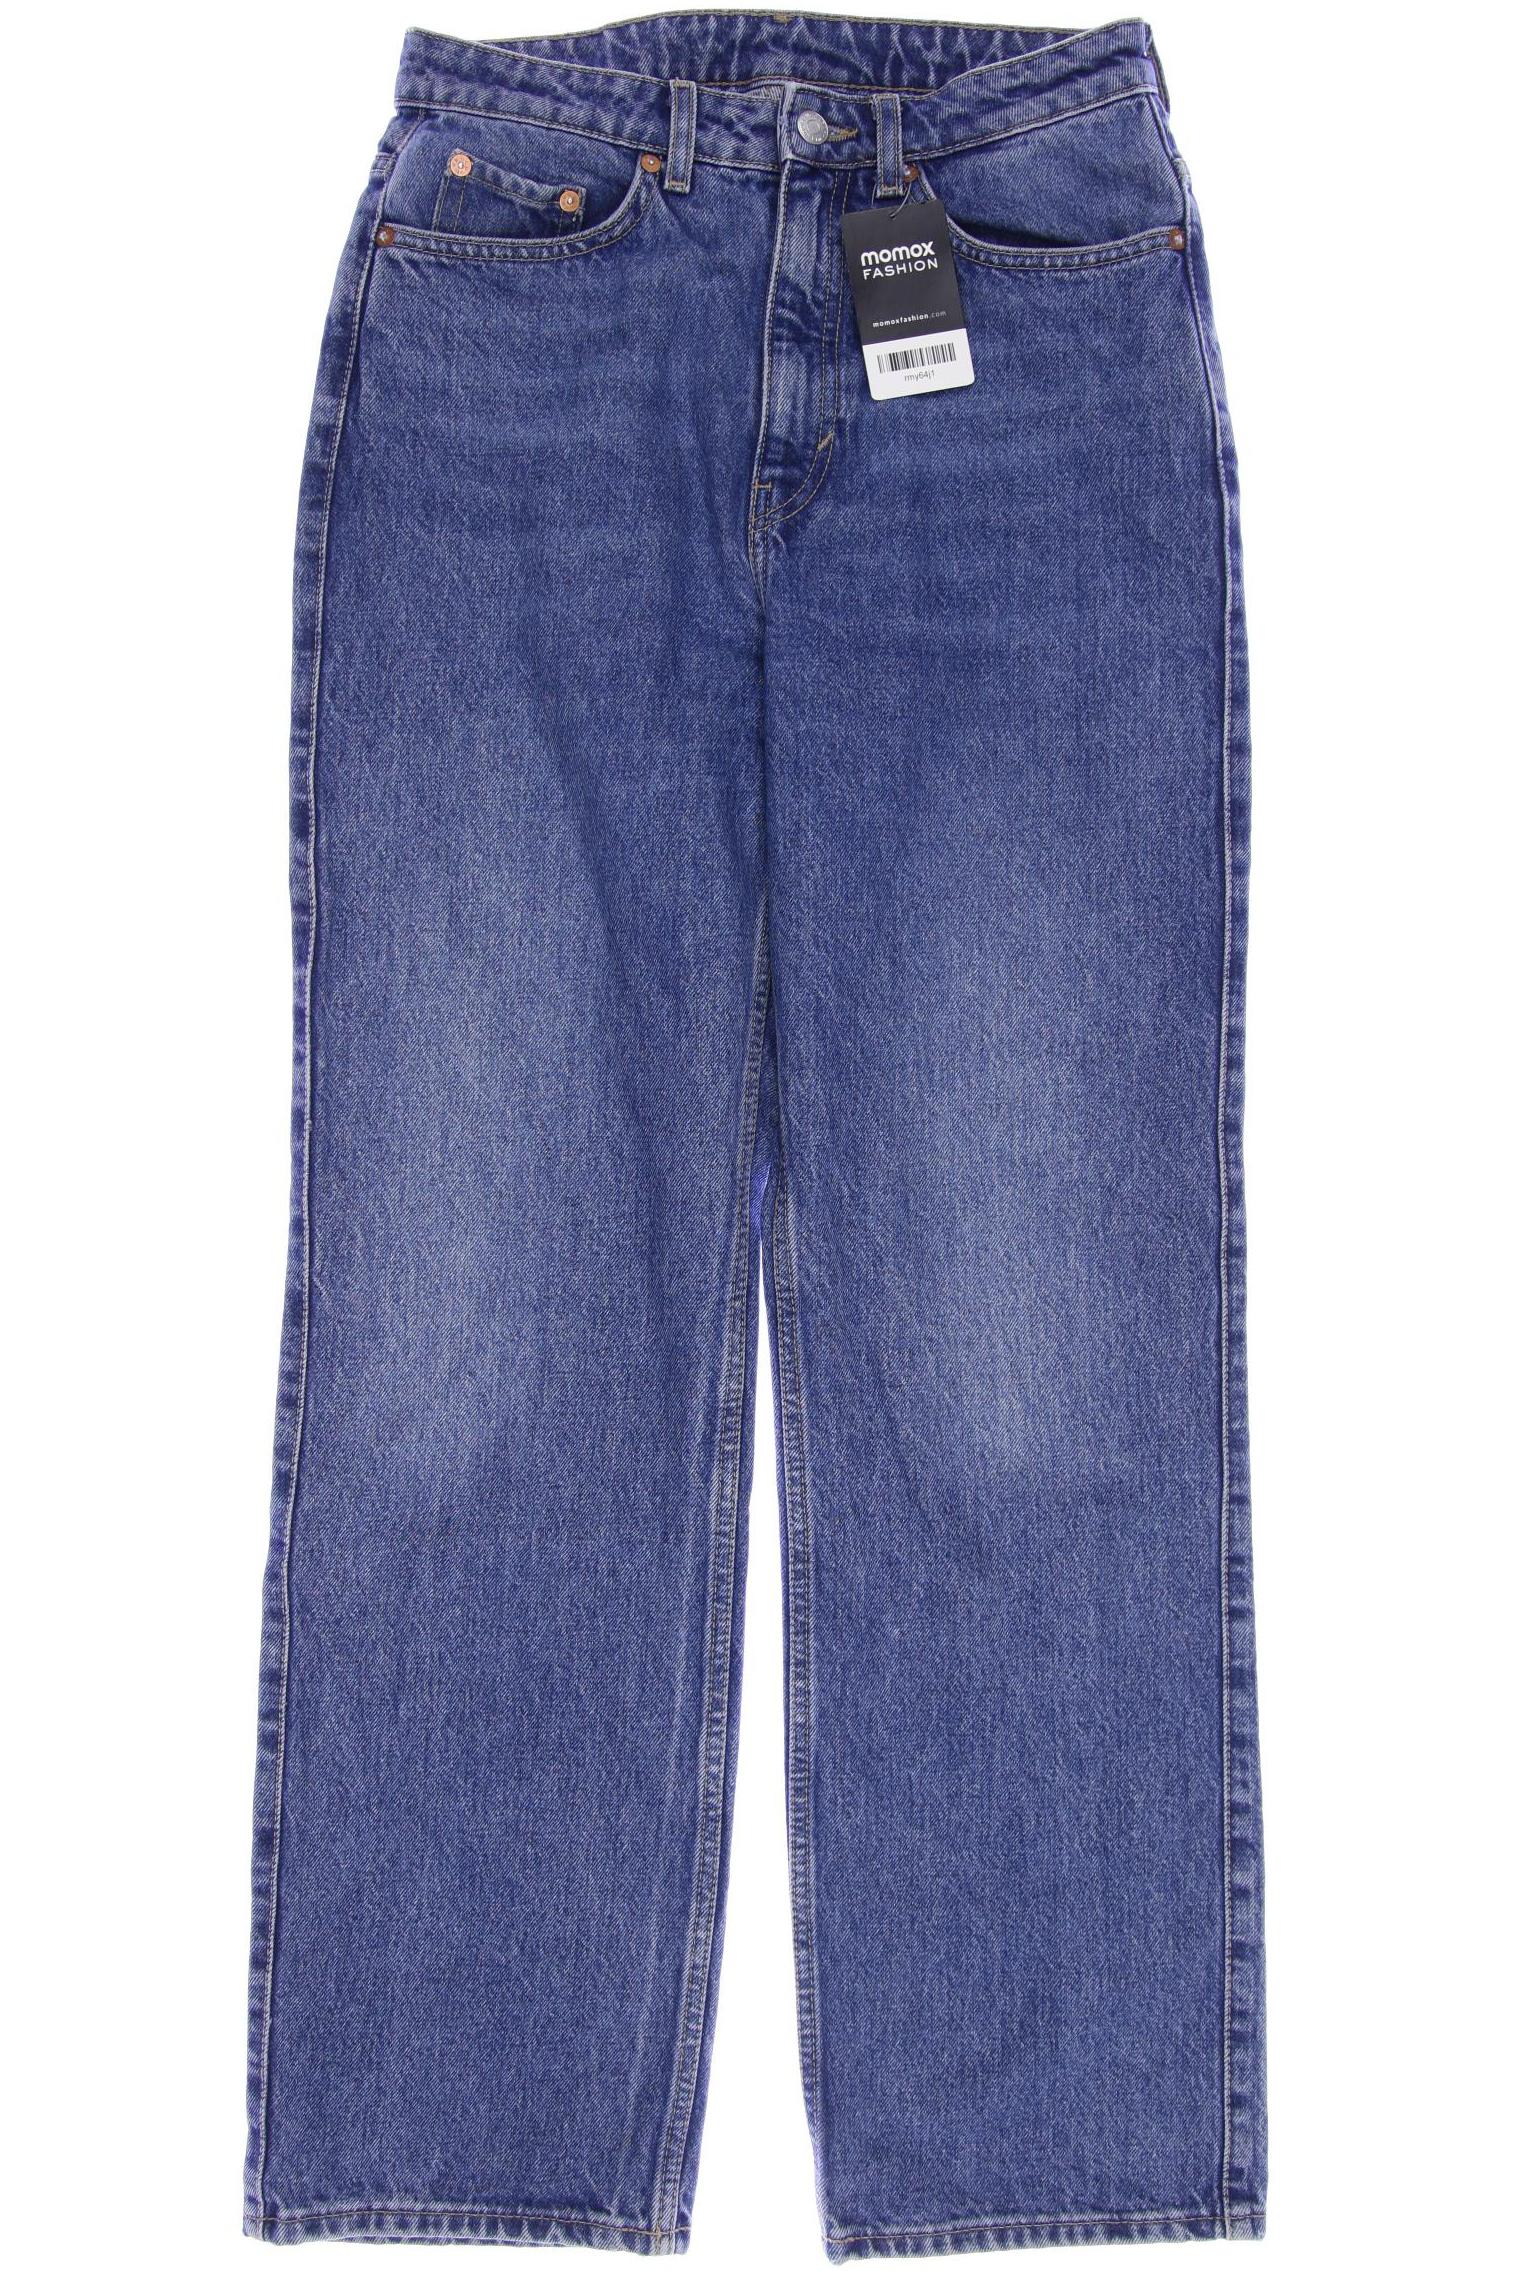 Weekday Damen Jeans, blau, Gr. 38 von Weekday